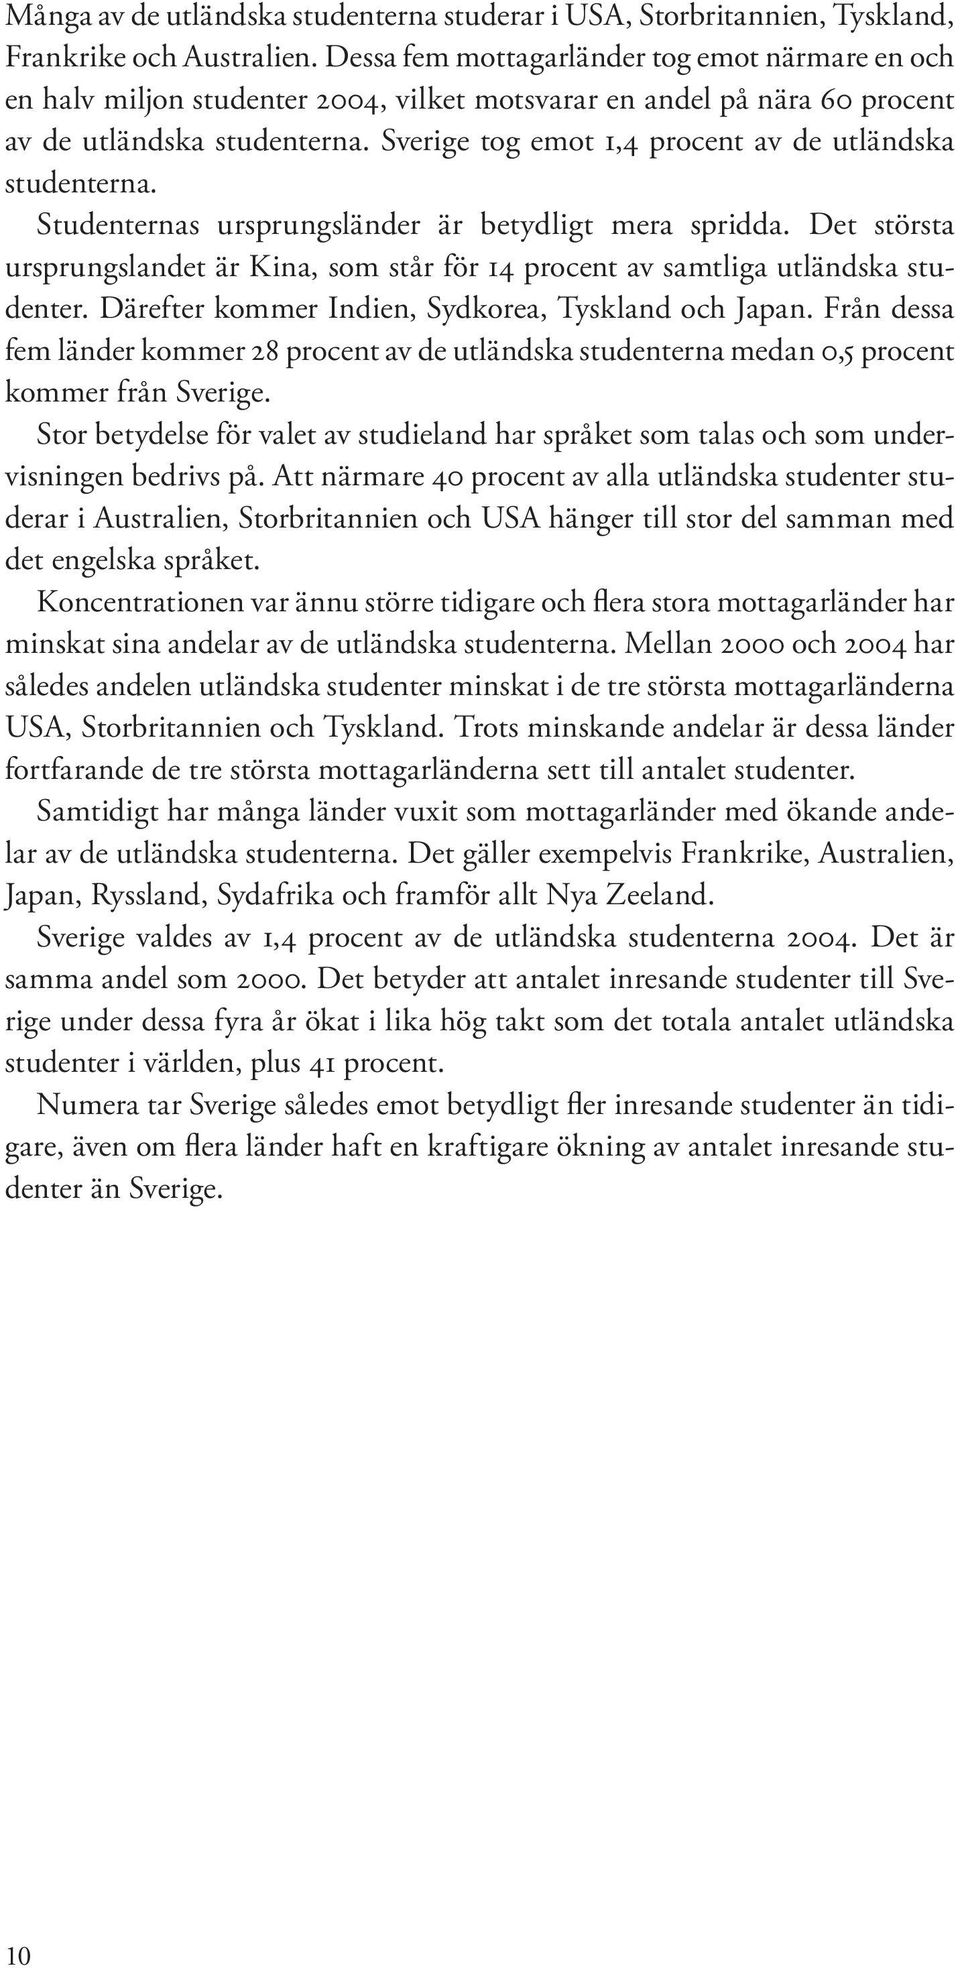 Sverige tog emot 1,4 procent av de utländska studenterna. Studenternas ursprungsländer är betydligt mera spridda.